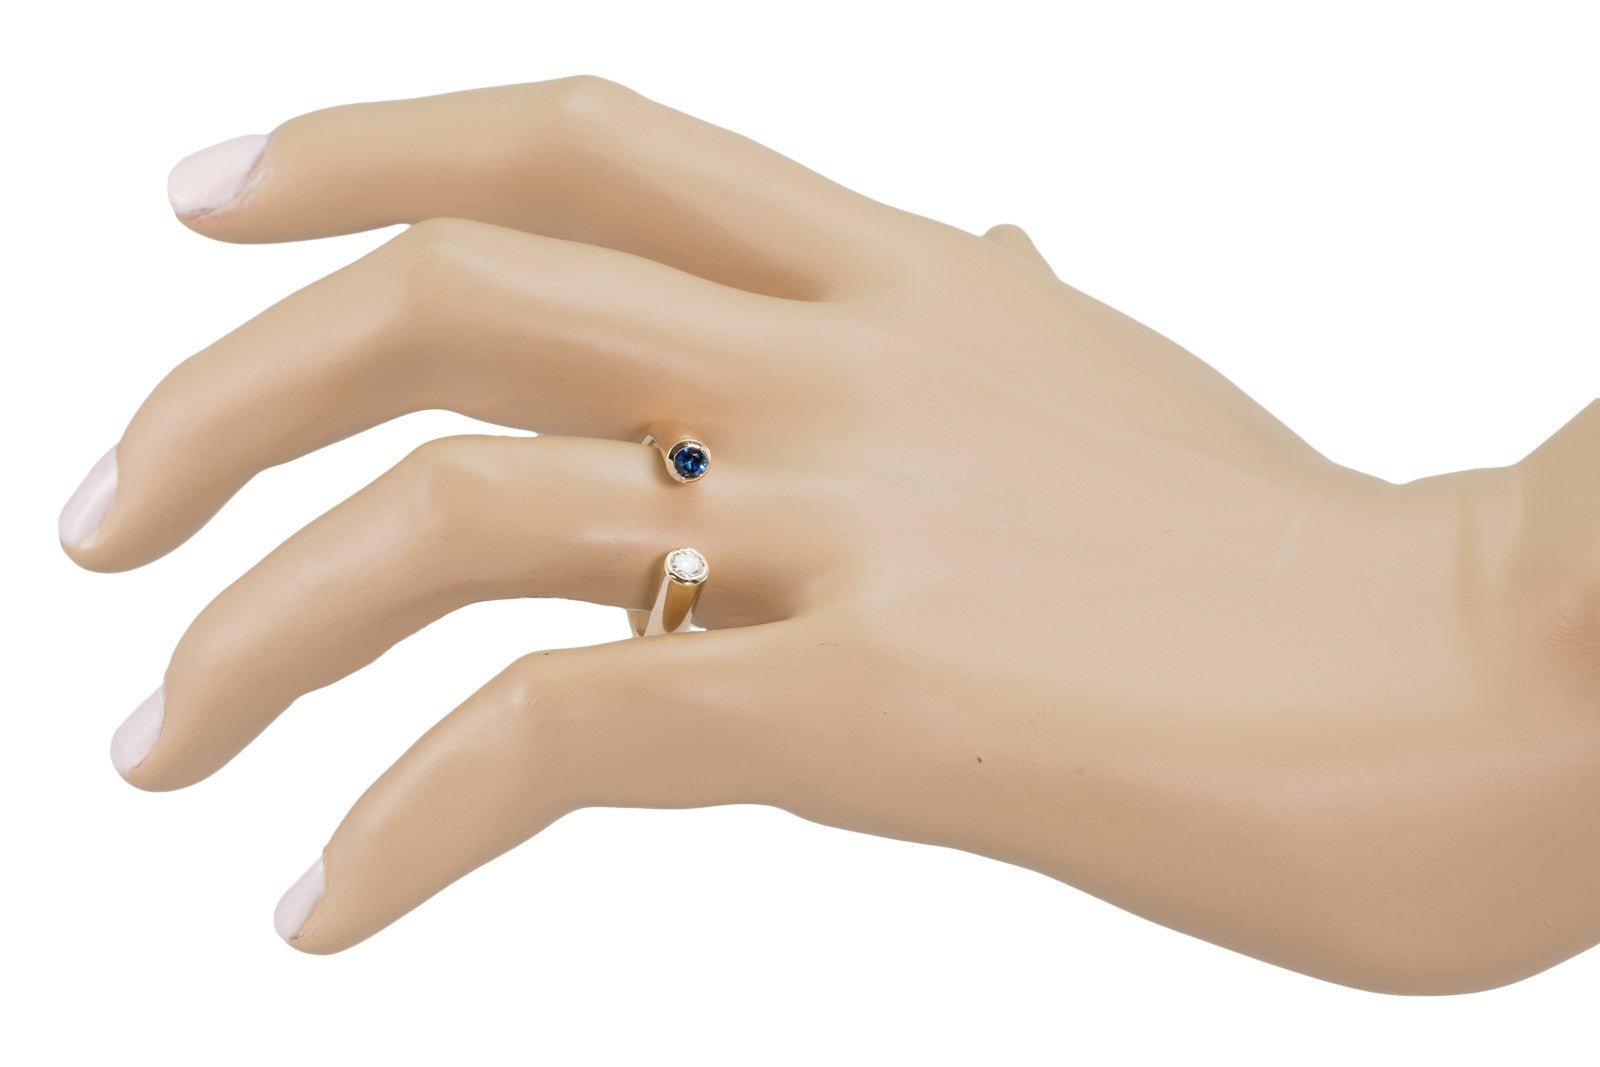 Horseshoe Sapphire and Diamond Ring